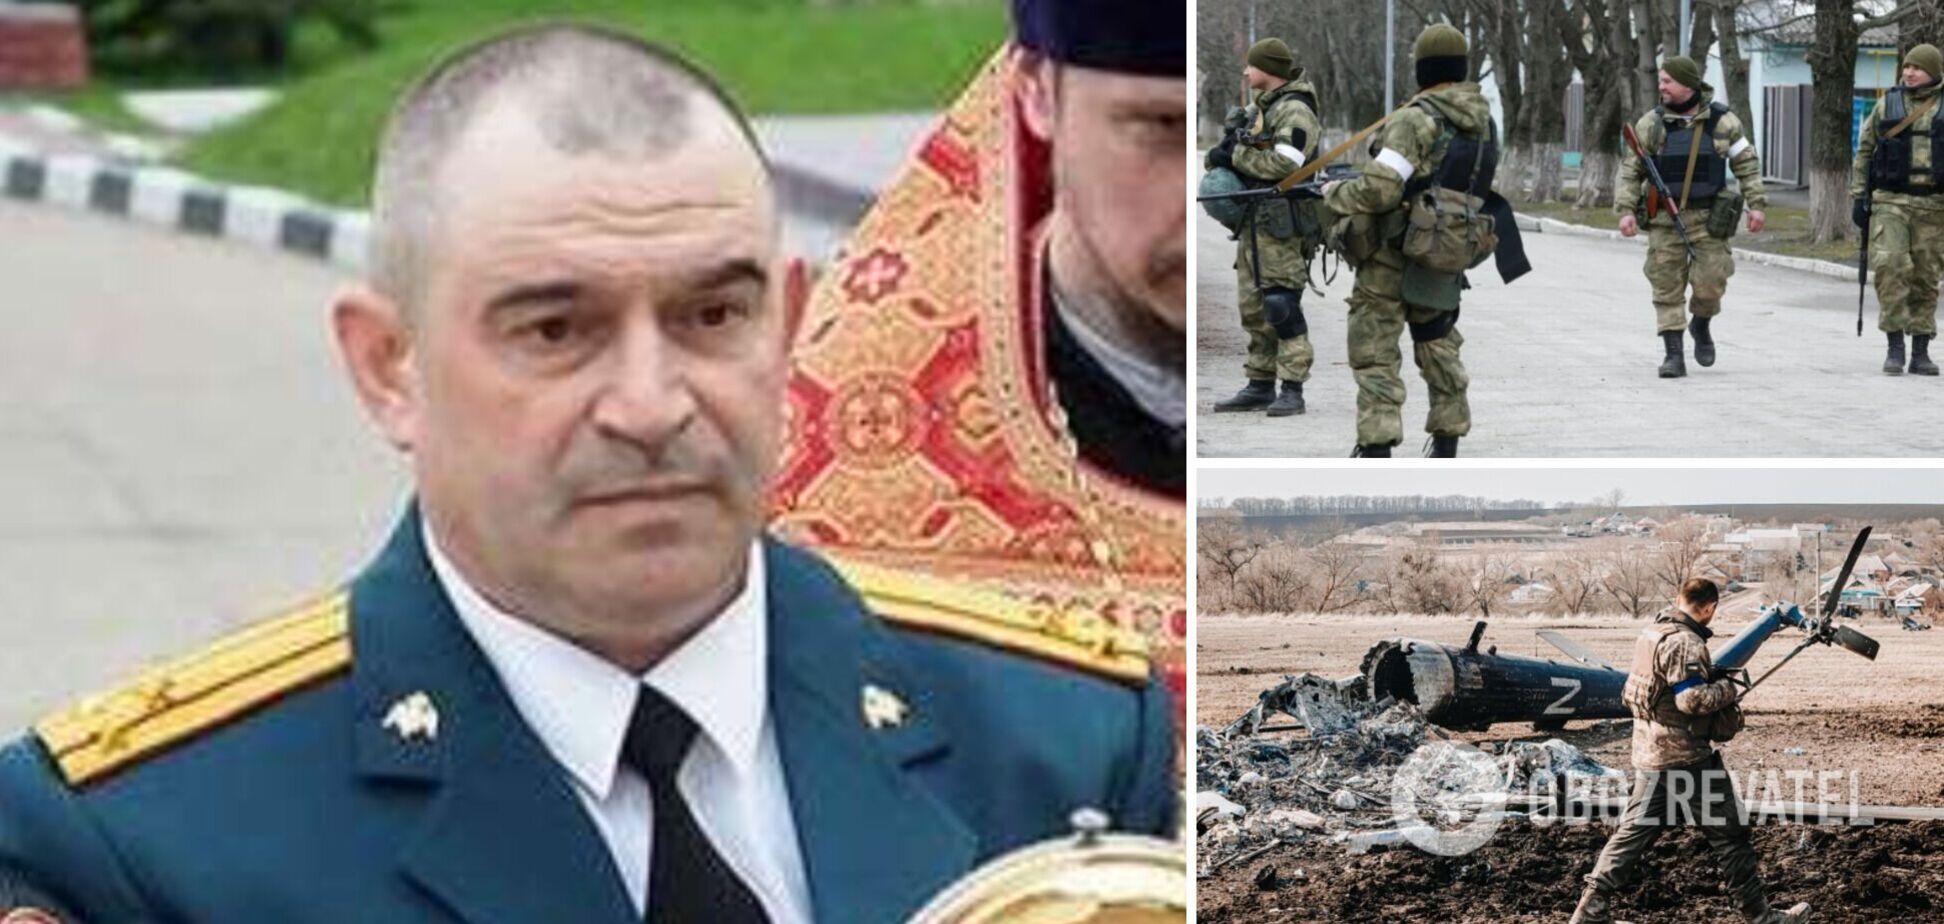 Разведка опубликовала данные командира-предателя из Крыма, который воюет против Украины